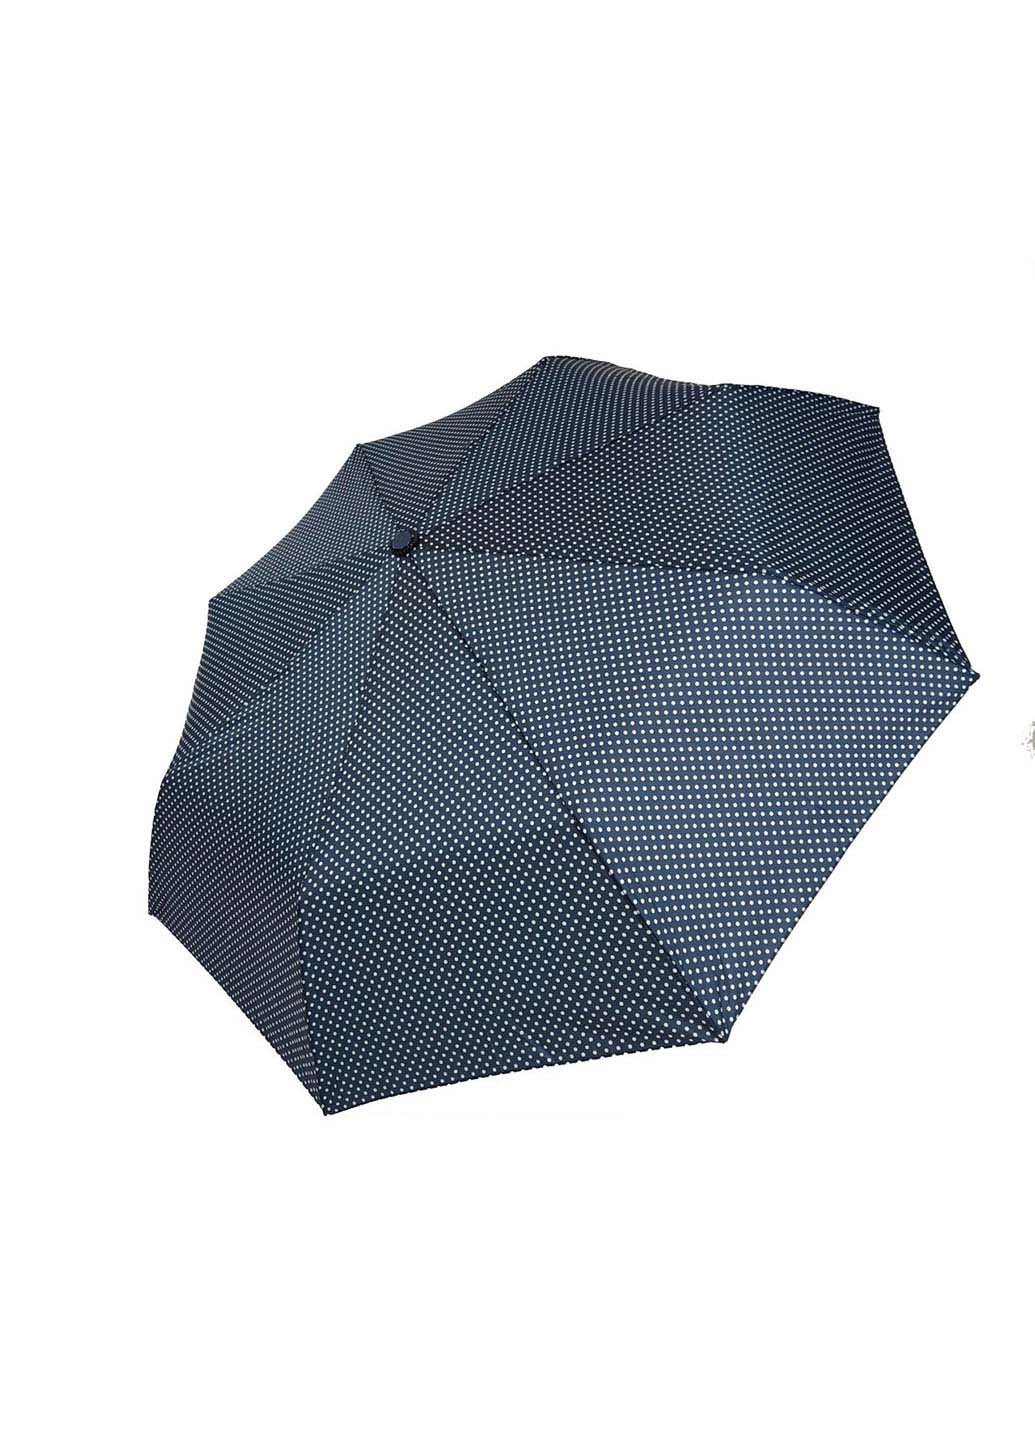 Зонт SL 35013-4 складной синий